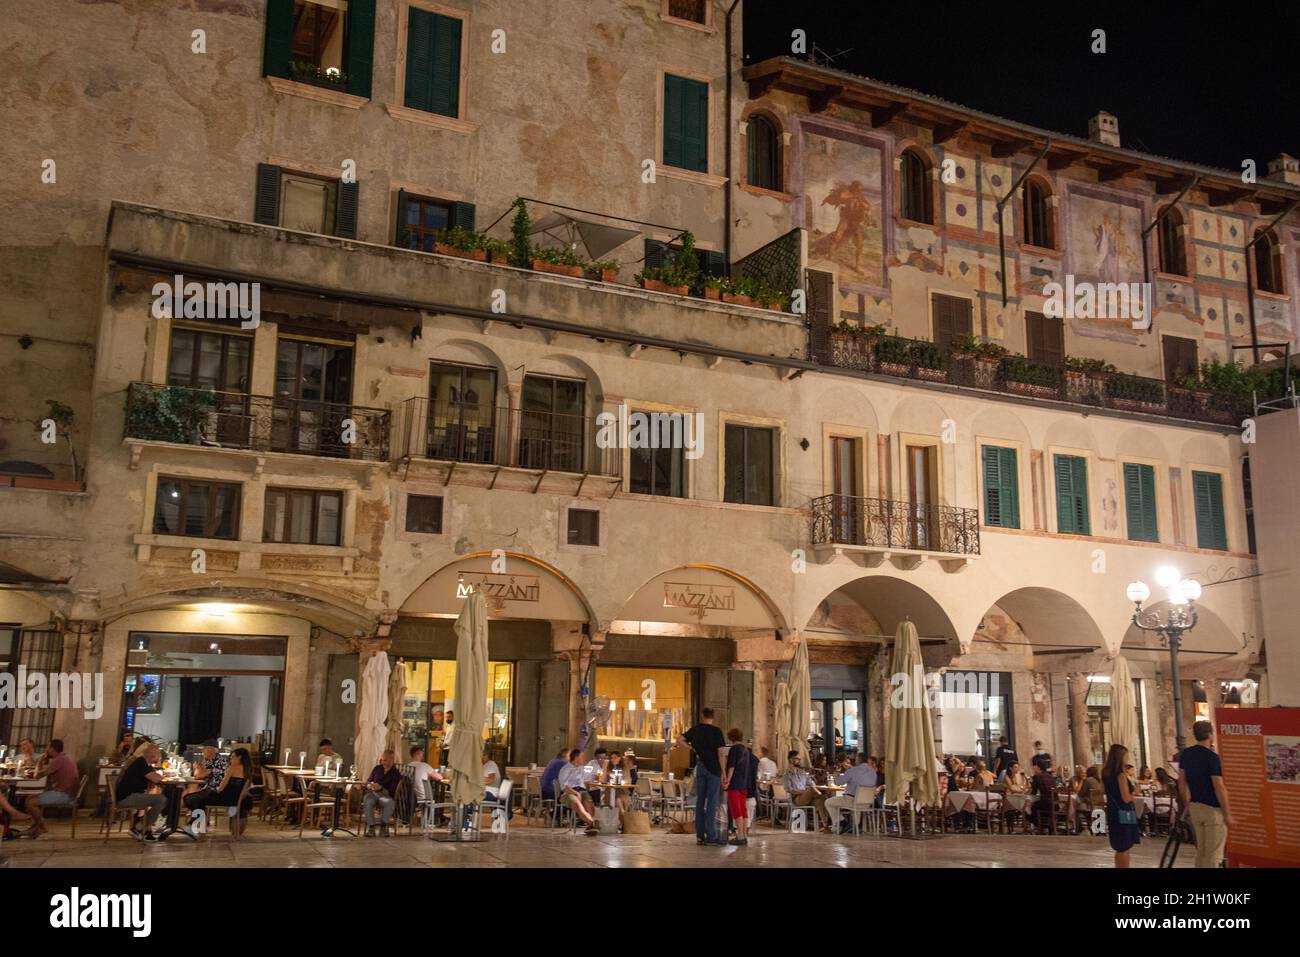 terraces at night in Verona, Italy Stock Photo